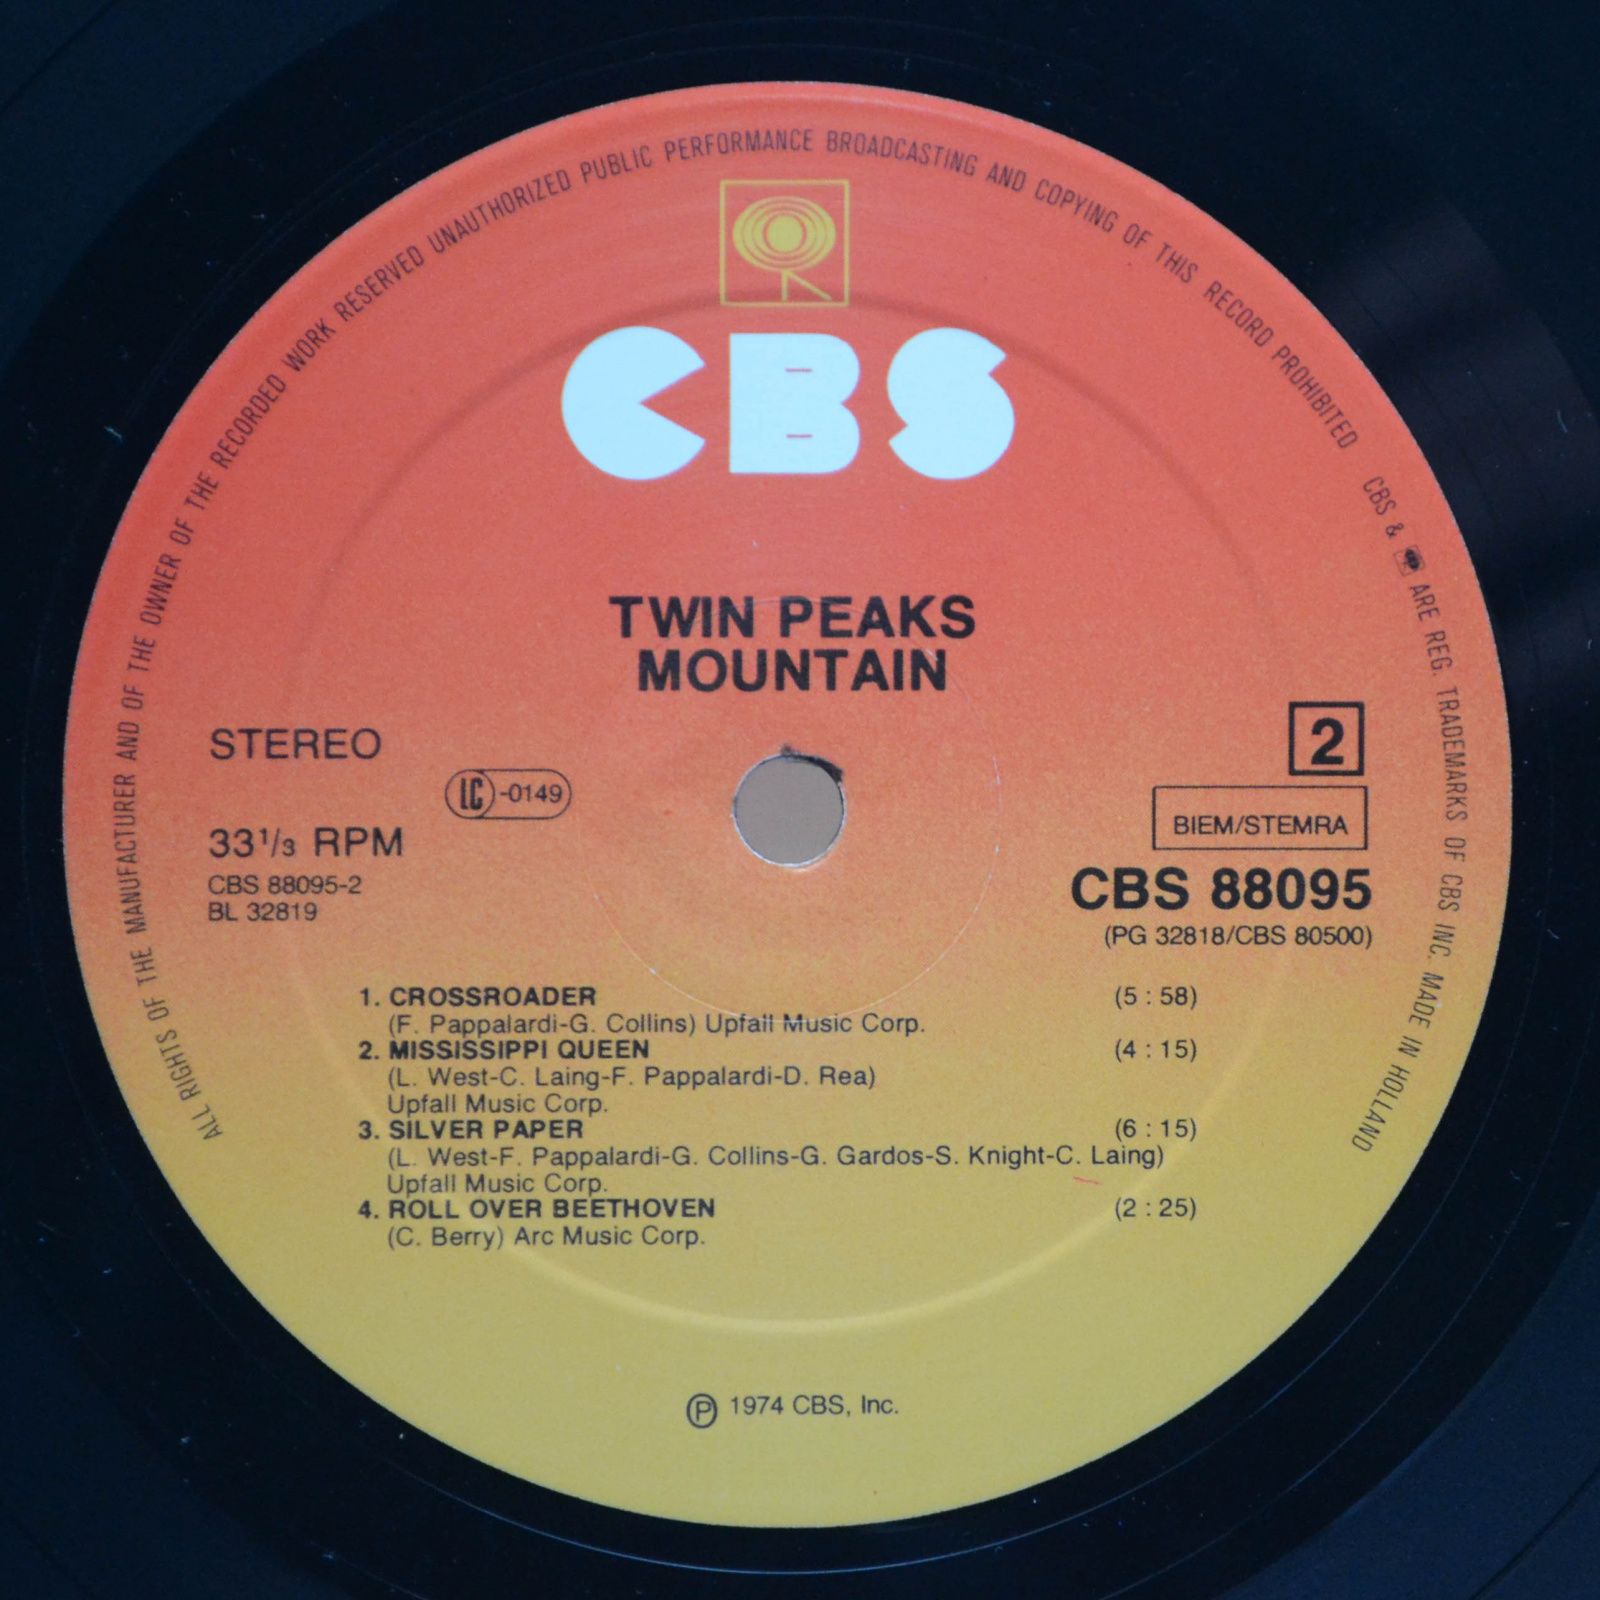 Mountain — Twin Peaks (2LP), 1973